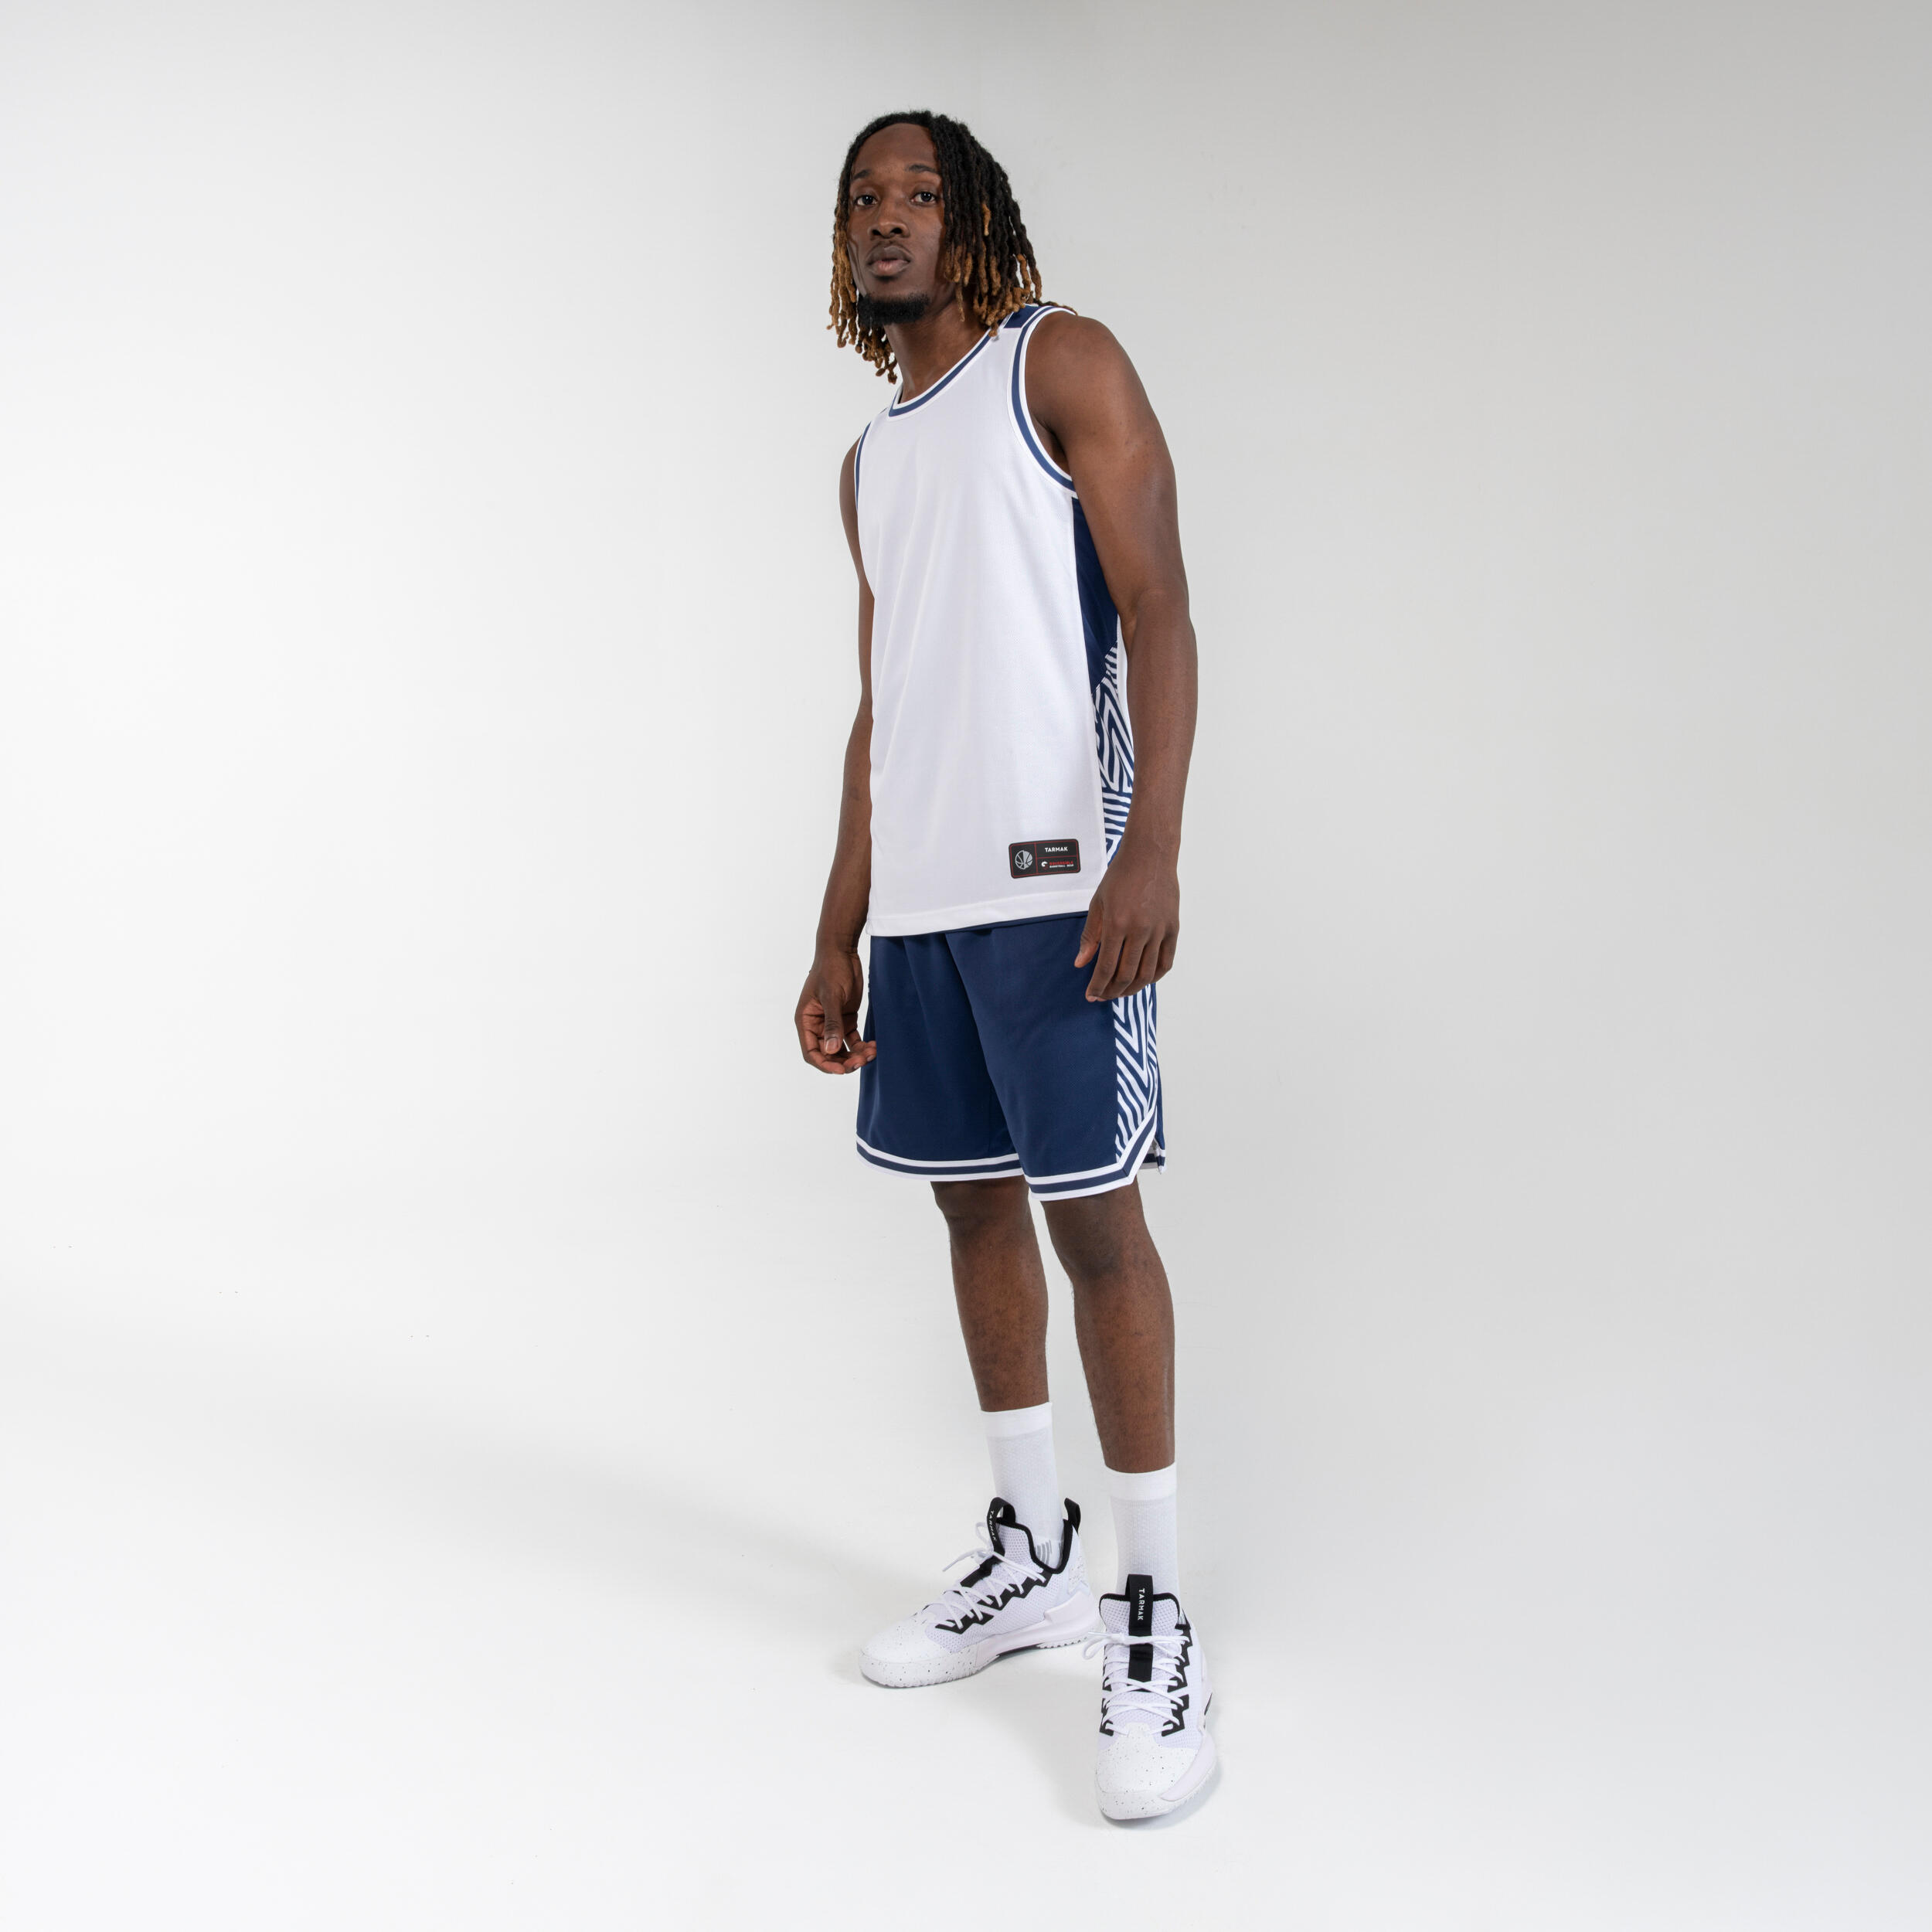 Men's/Women's Reversible Basketball Shorts SH500R - White/Navy 5/6